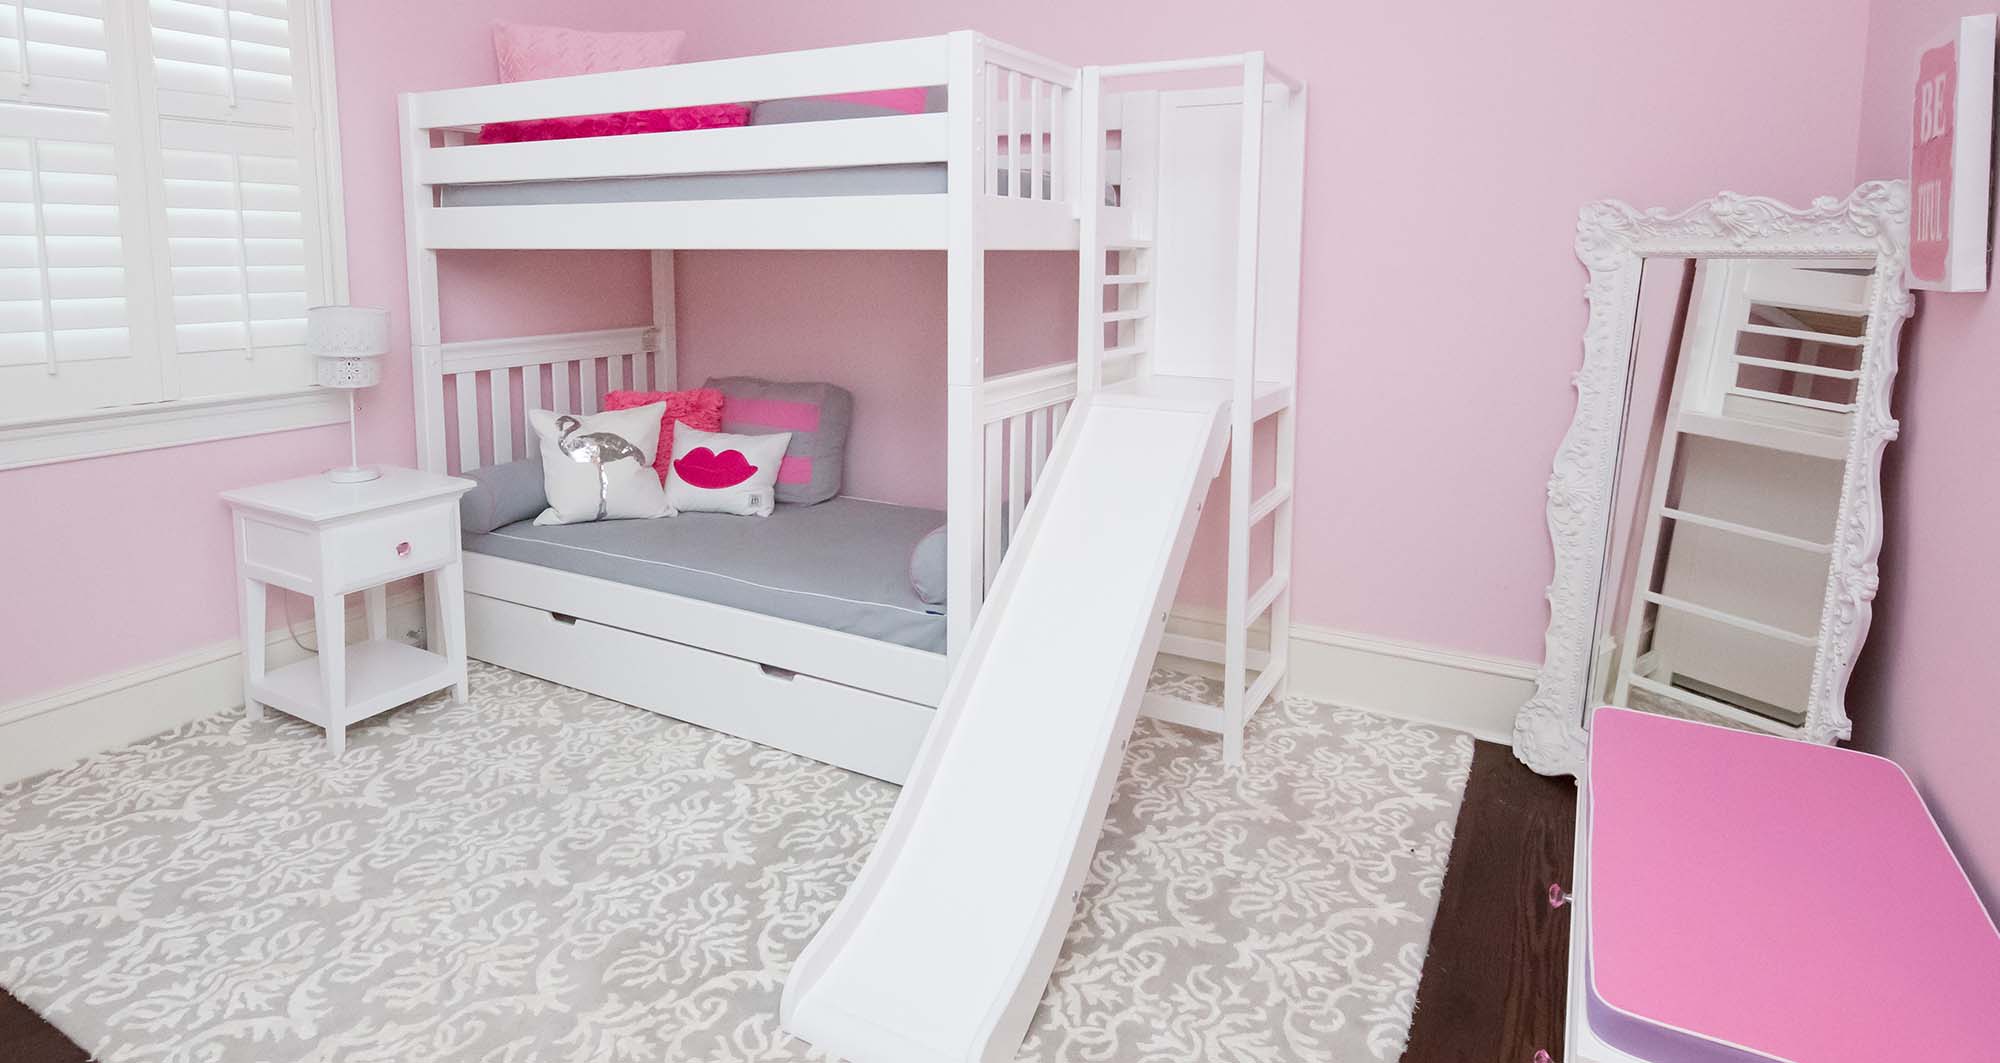 Phòng ngủ màu hồng với giường tầng tích hợp cầu tuột làm đồ chơi cho bé